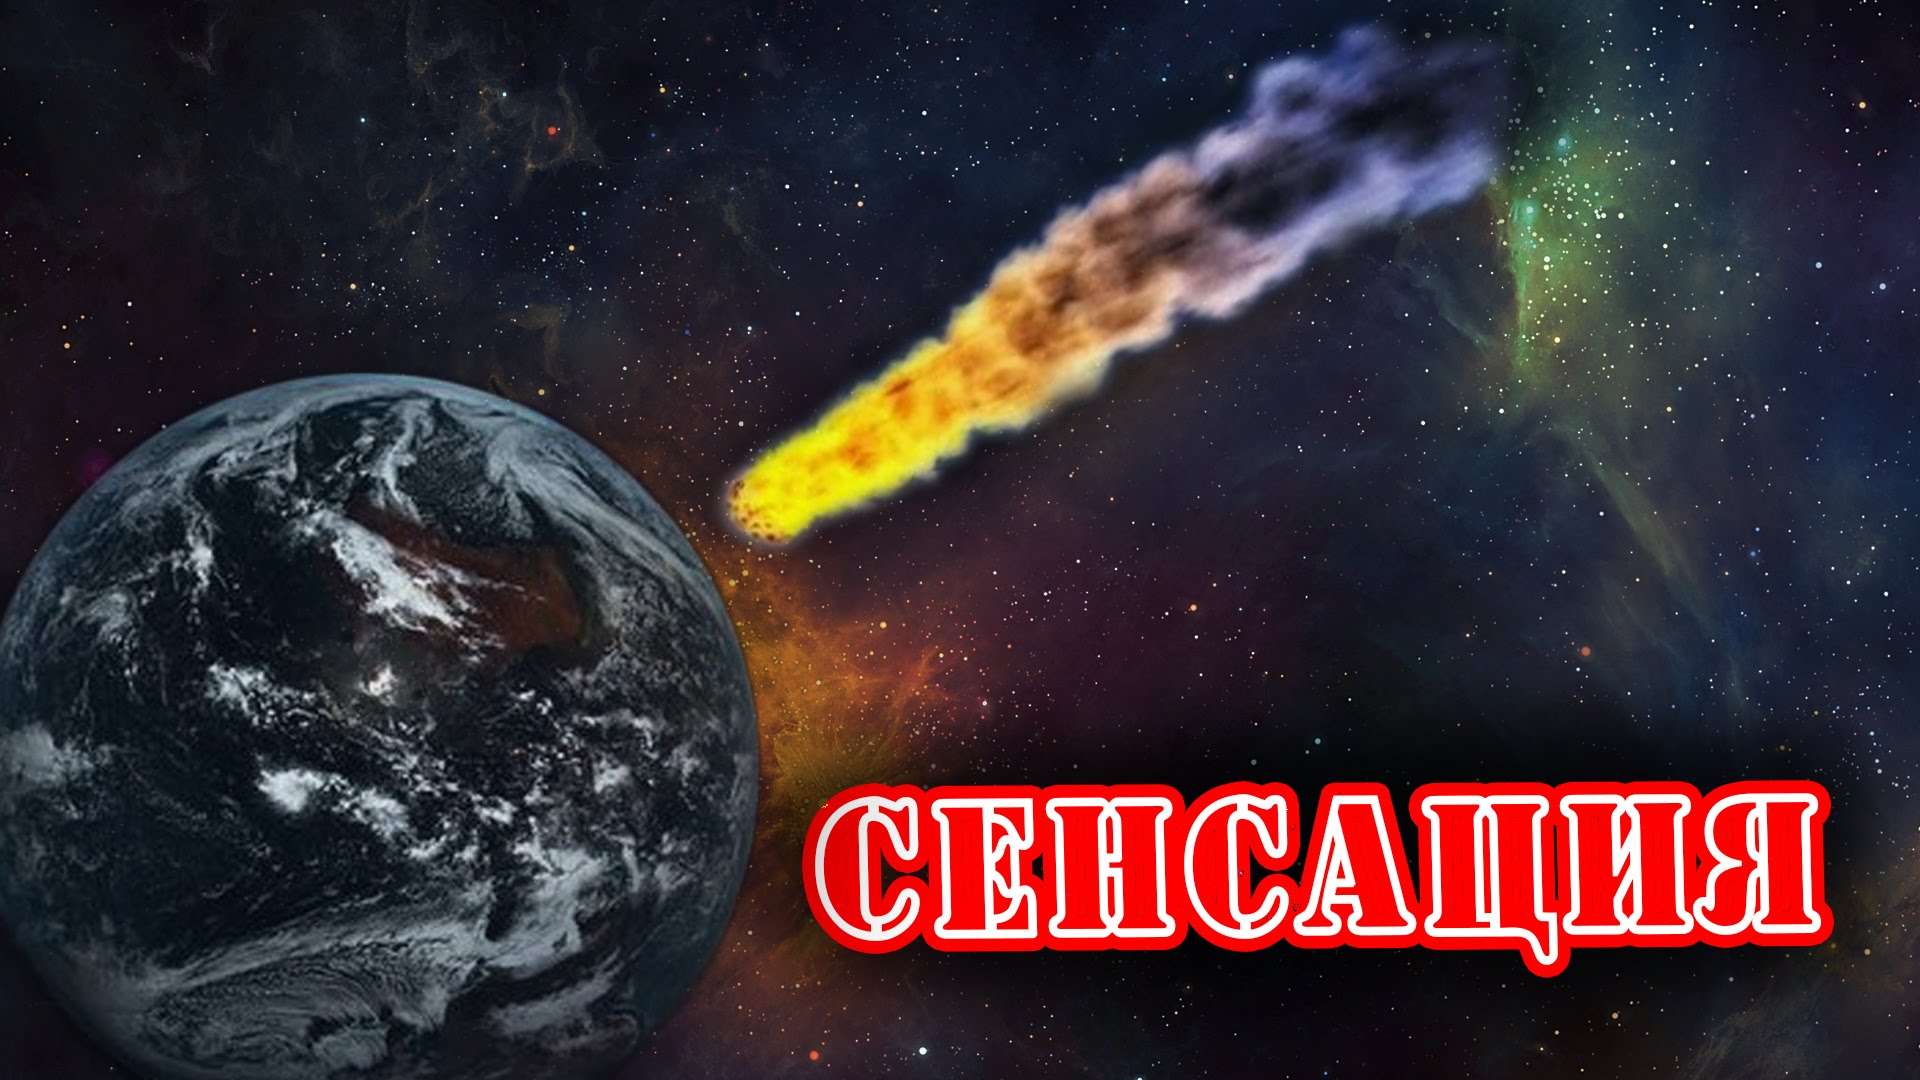 Сенсационное заявление ! На Землю летит огромный астероид! Дата гибели планеты Земля